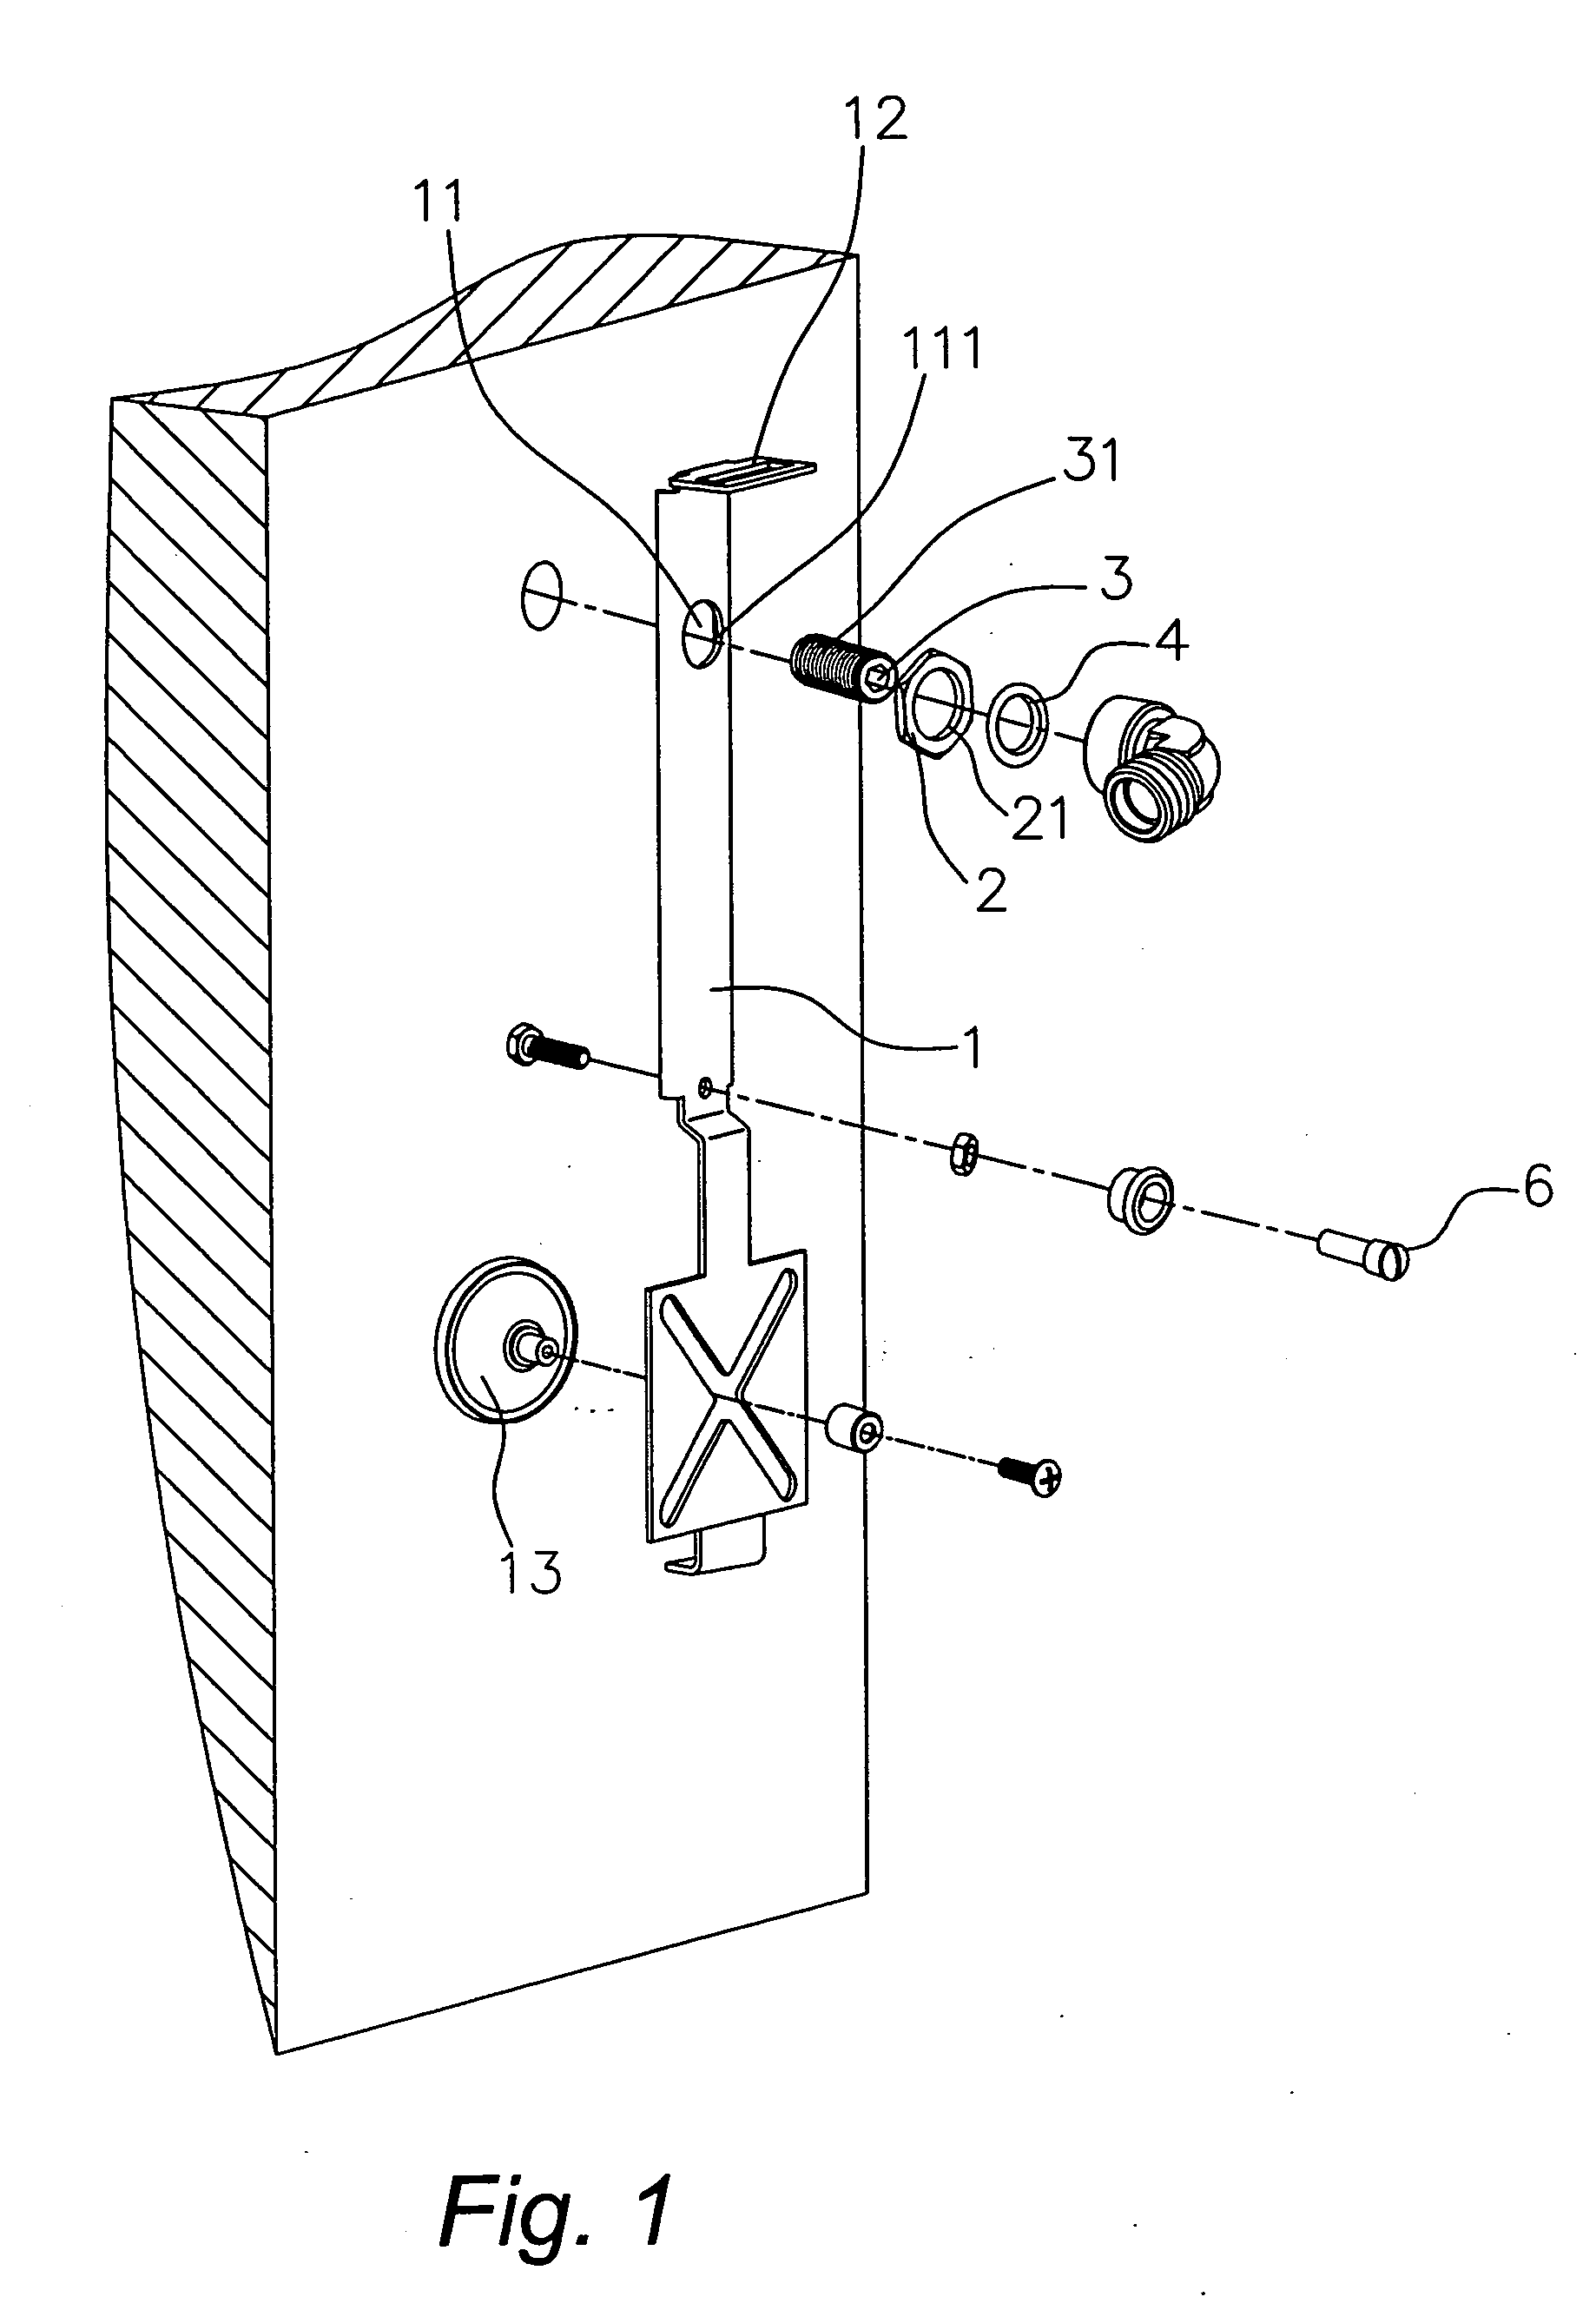 Fast pedestal mechanism for shower panel